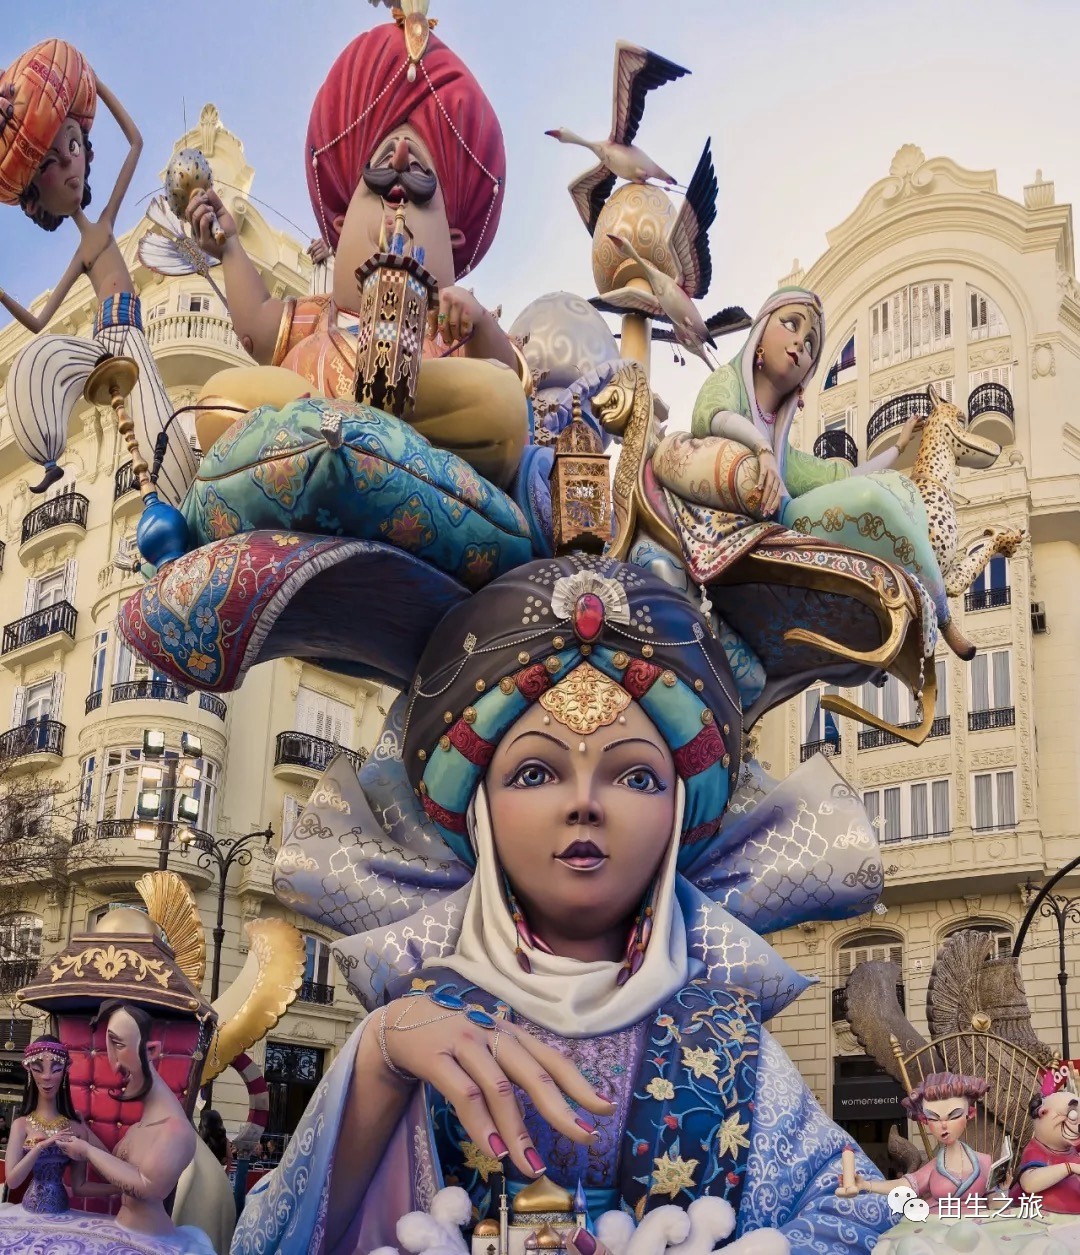 地球上最“火热”的狂欢节 | 西班牙法雅节